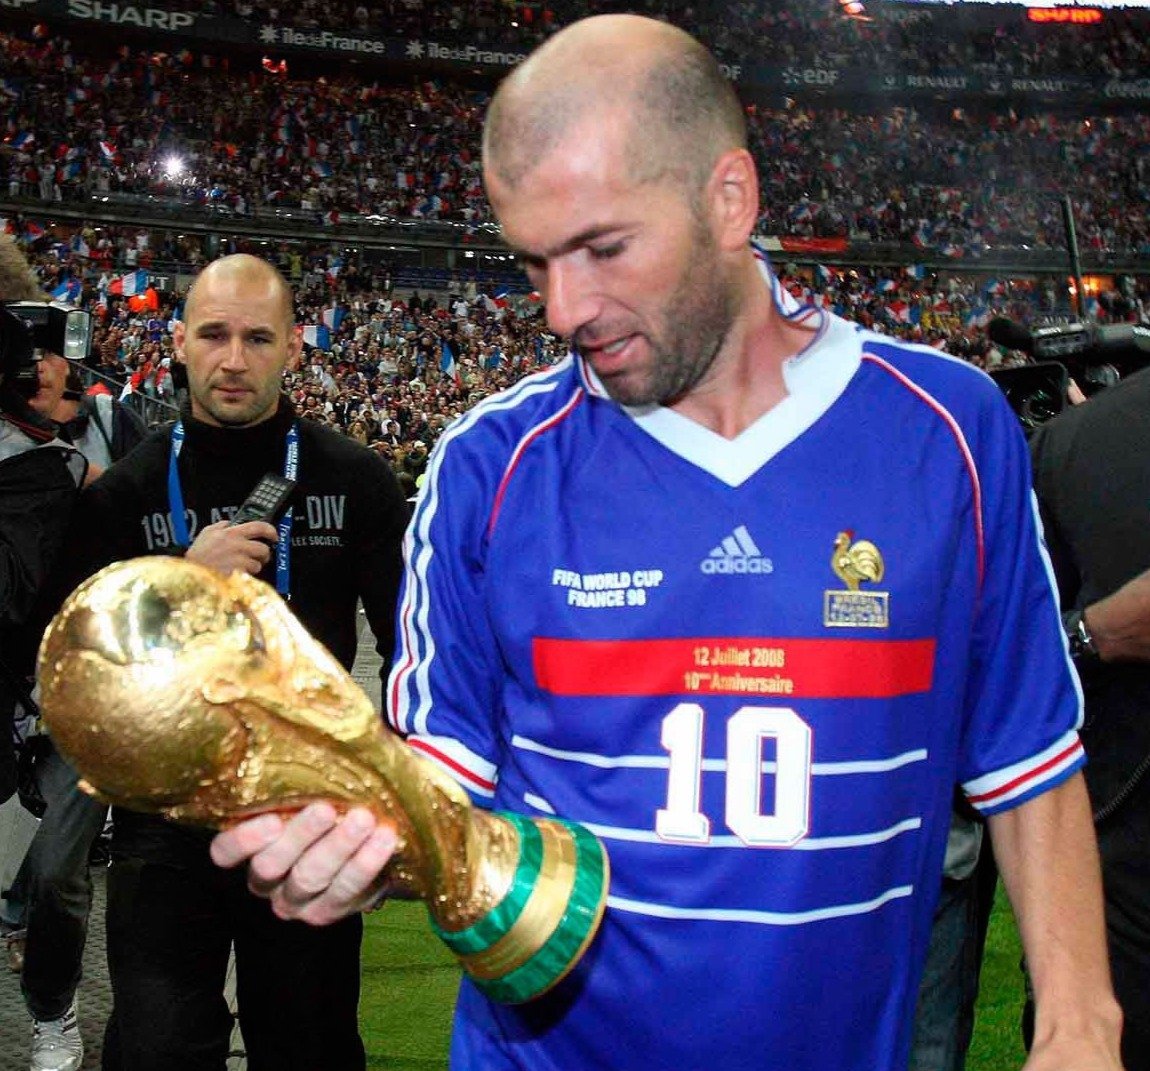 Francia 1998 Matchday: Final del Mundo - Zidane - Thunder Internacional